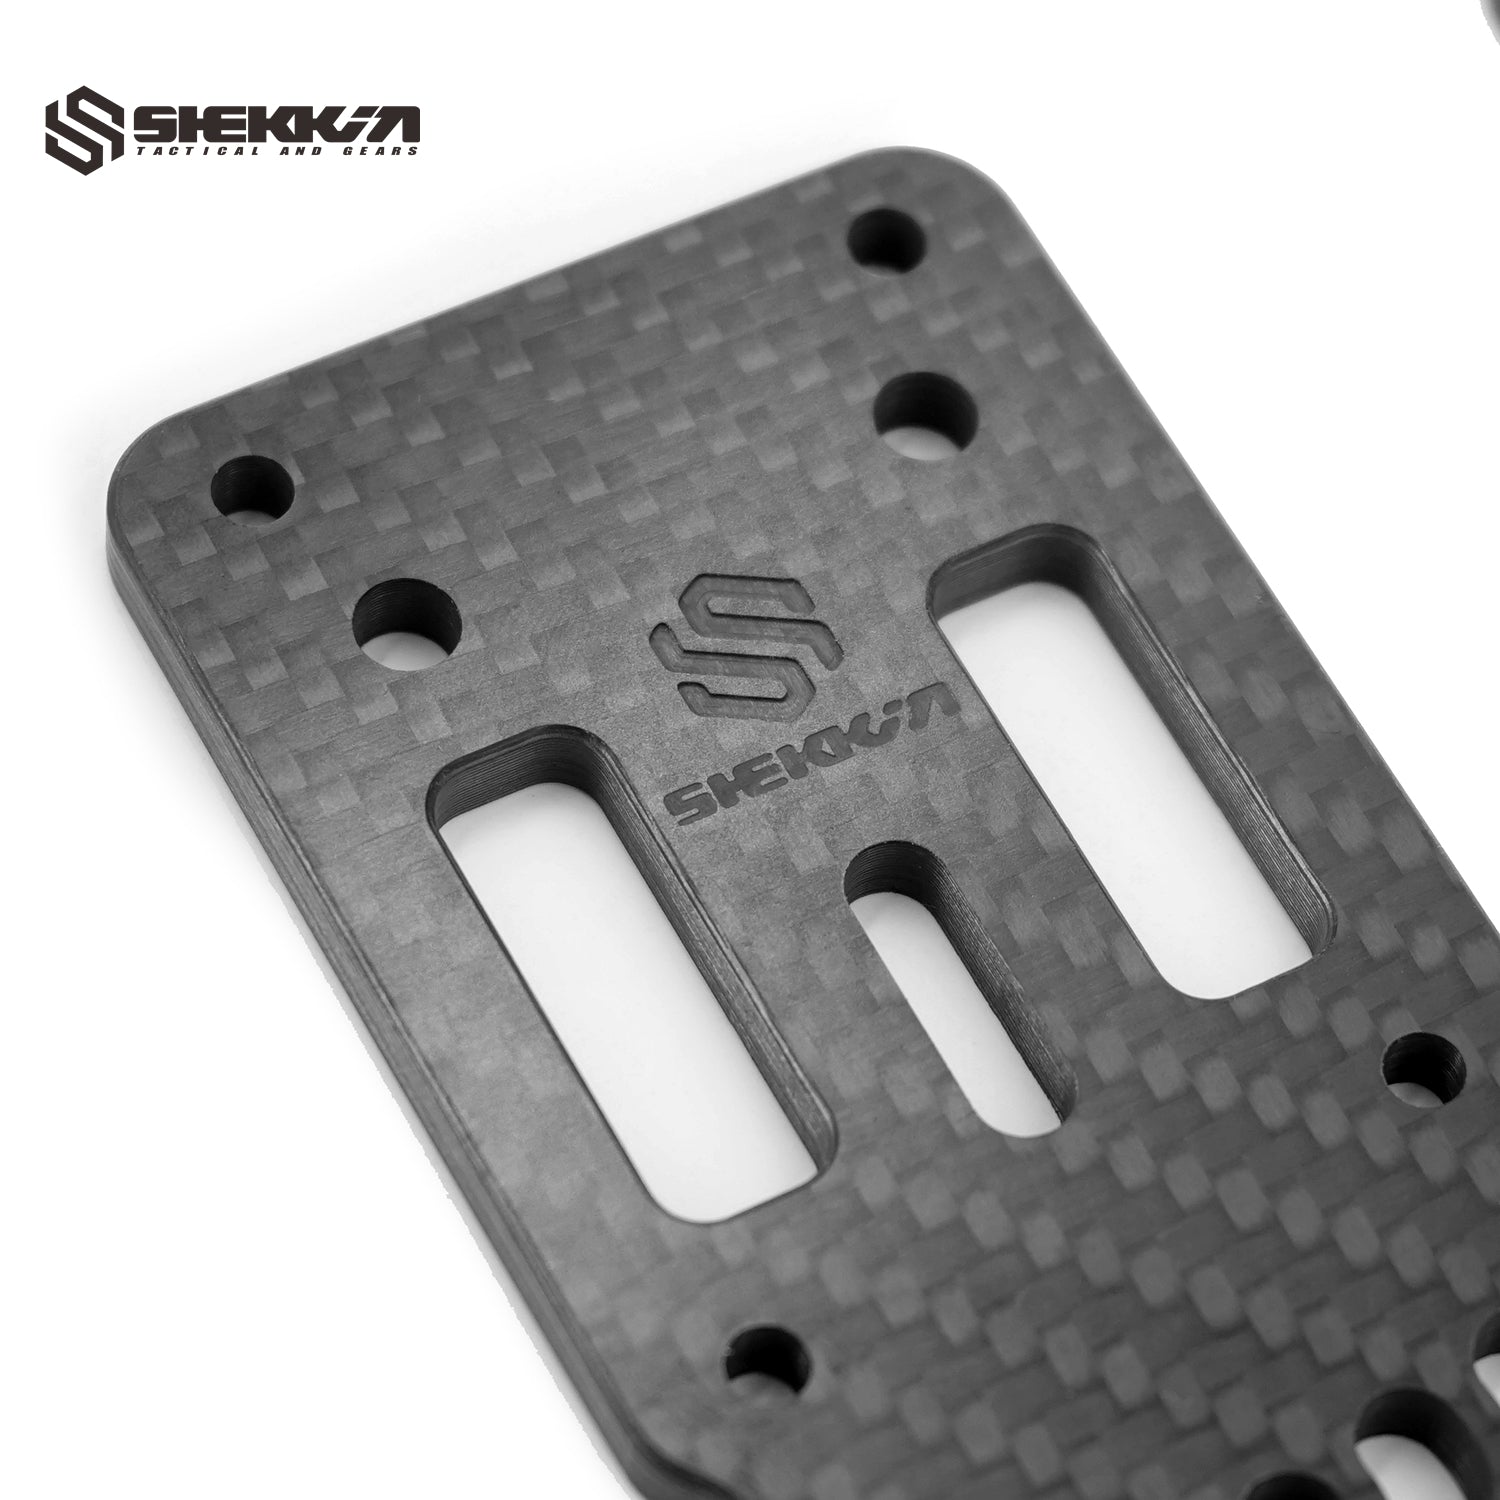 Shekkin Gears Modular Holster Adaptor - Shekkin Gears